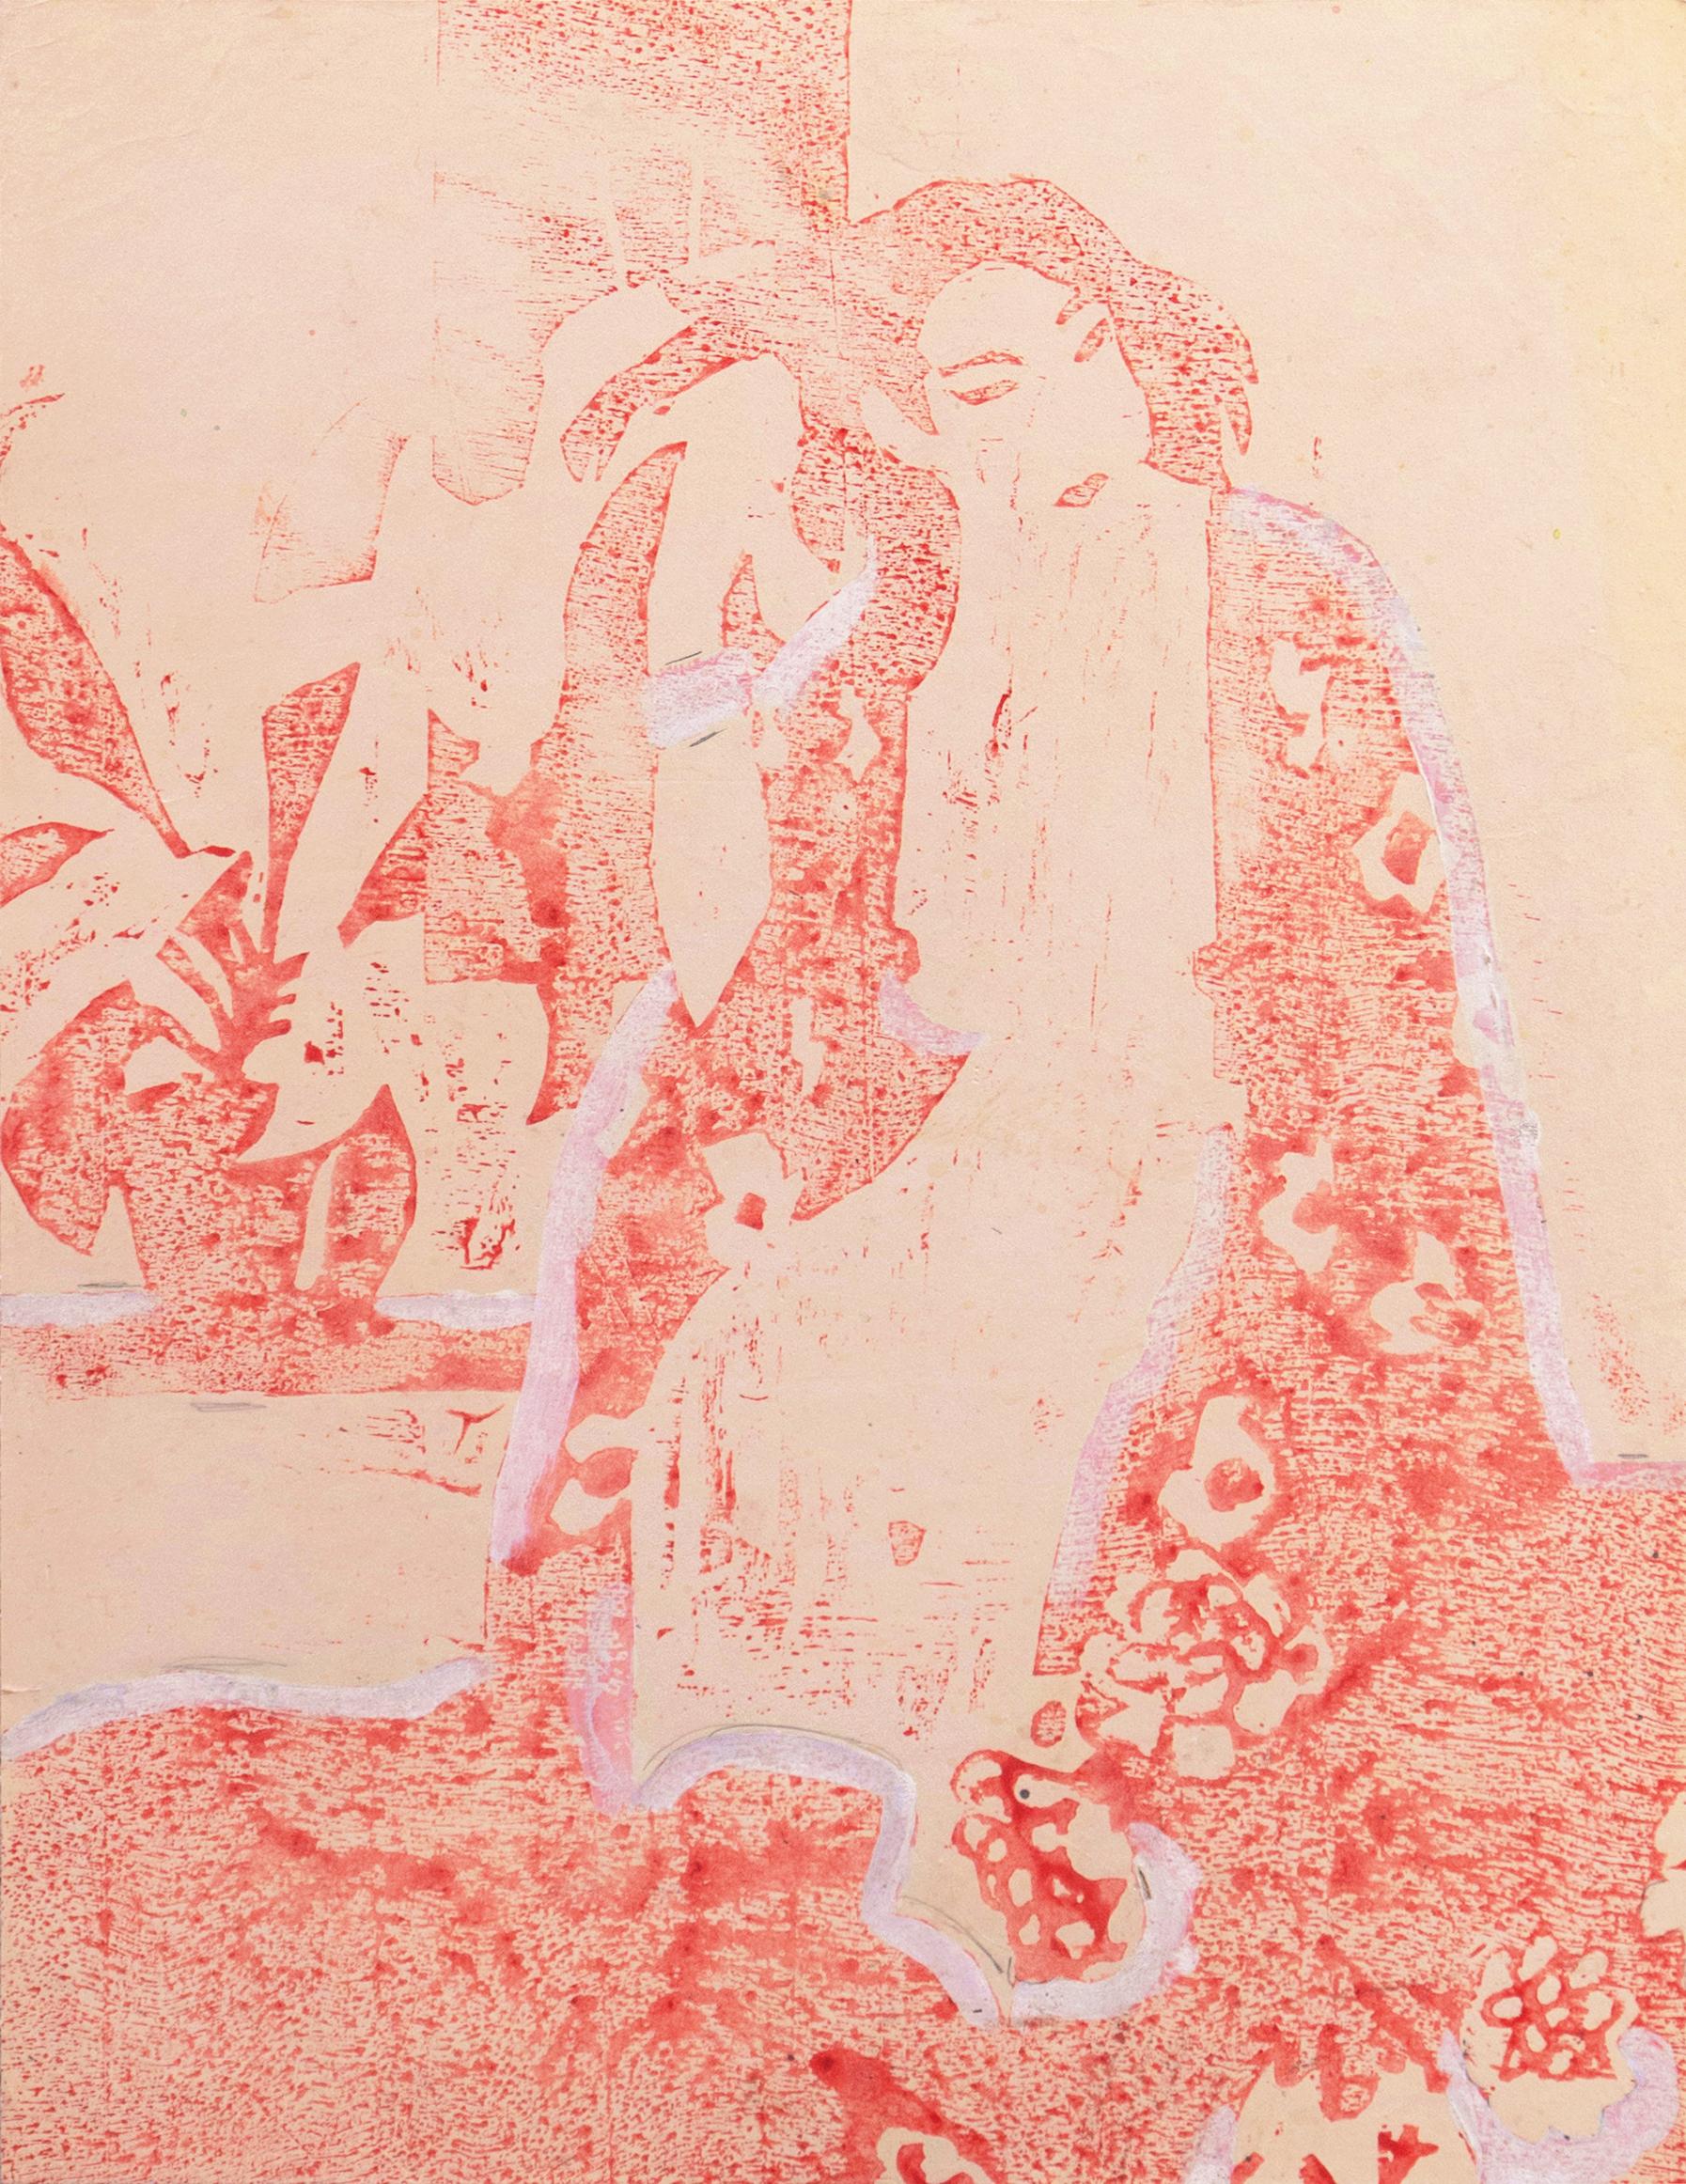 Frau im Kimono", Paris, Louvre, Salon d'Automne, Académie Chaumière, LACMA